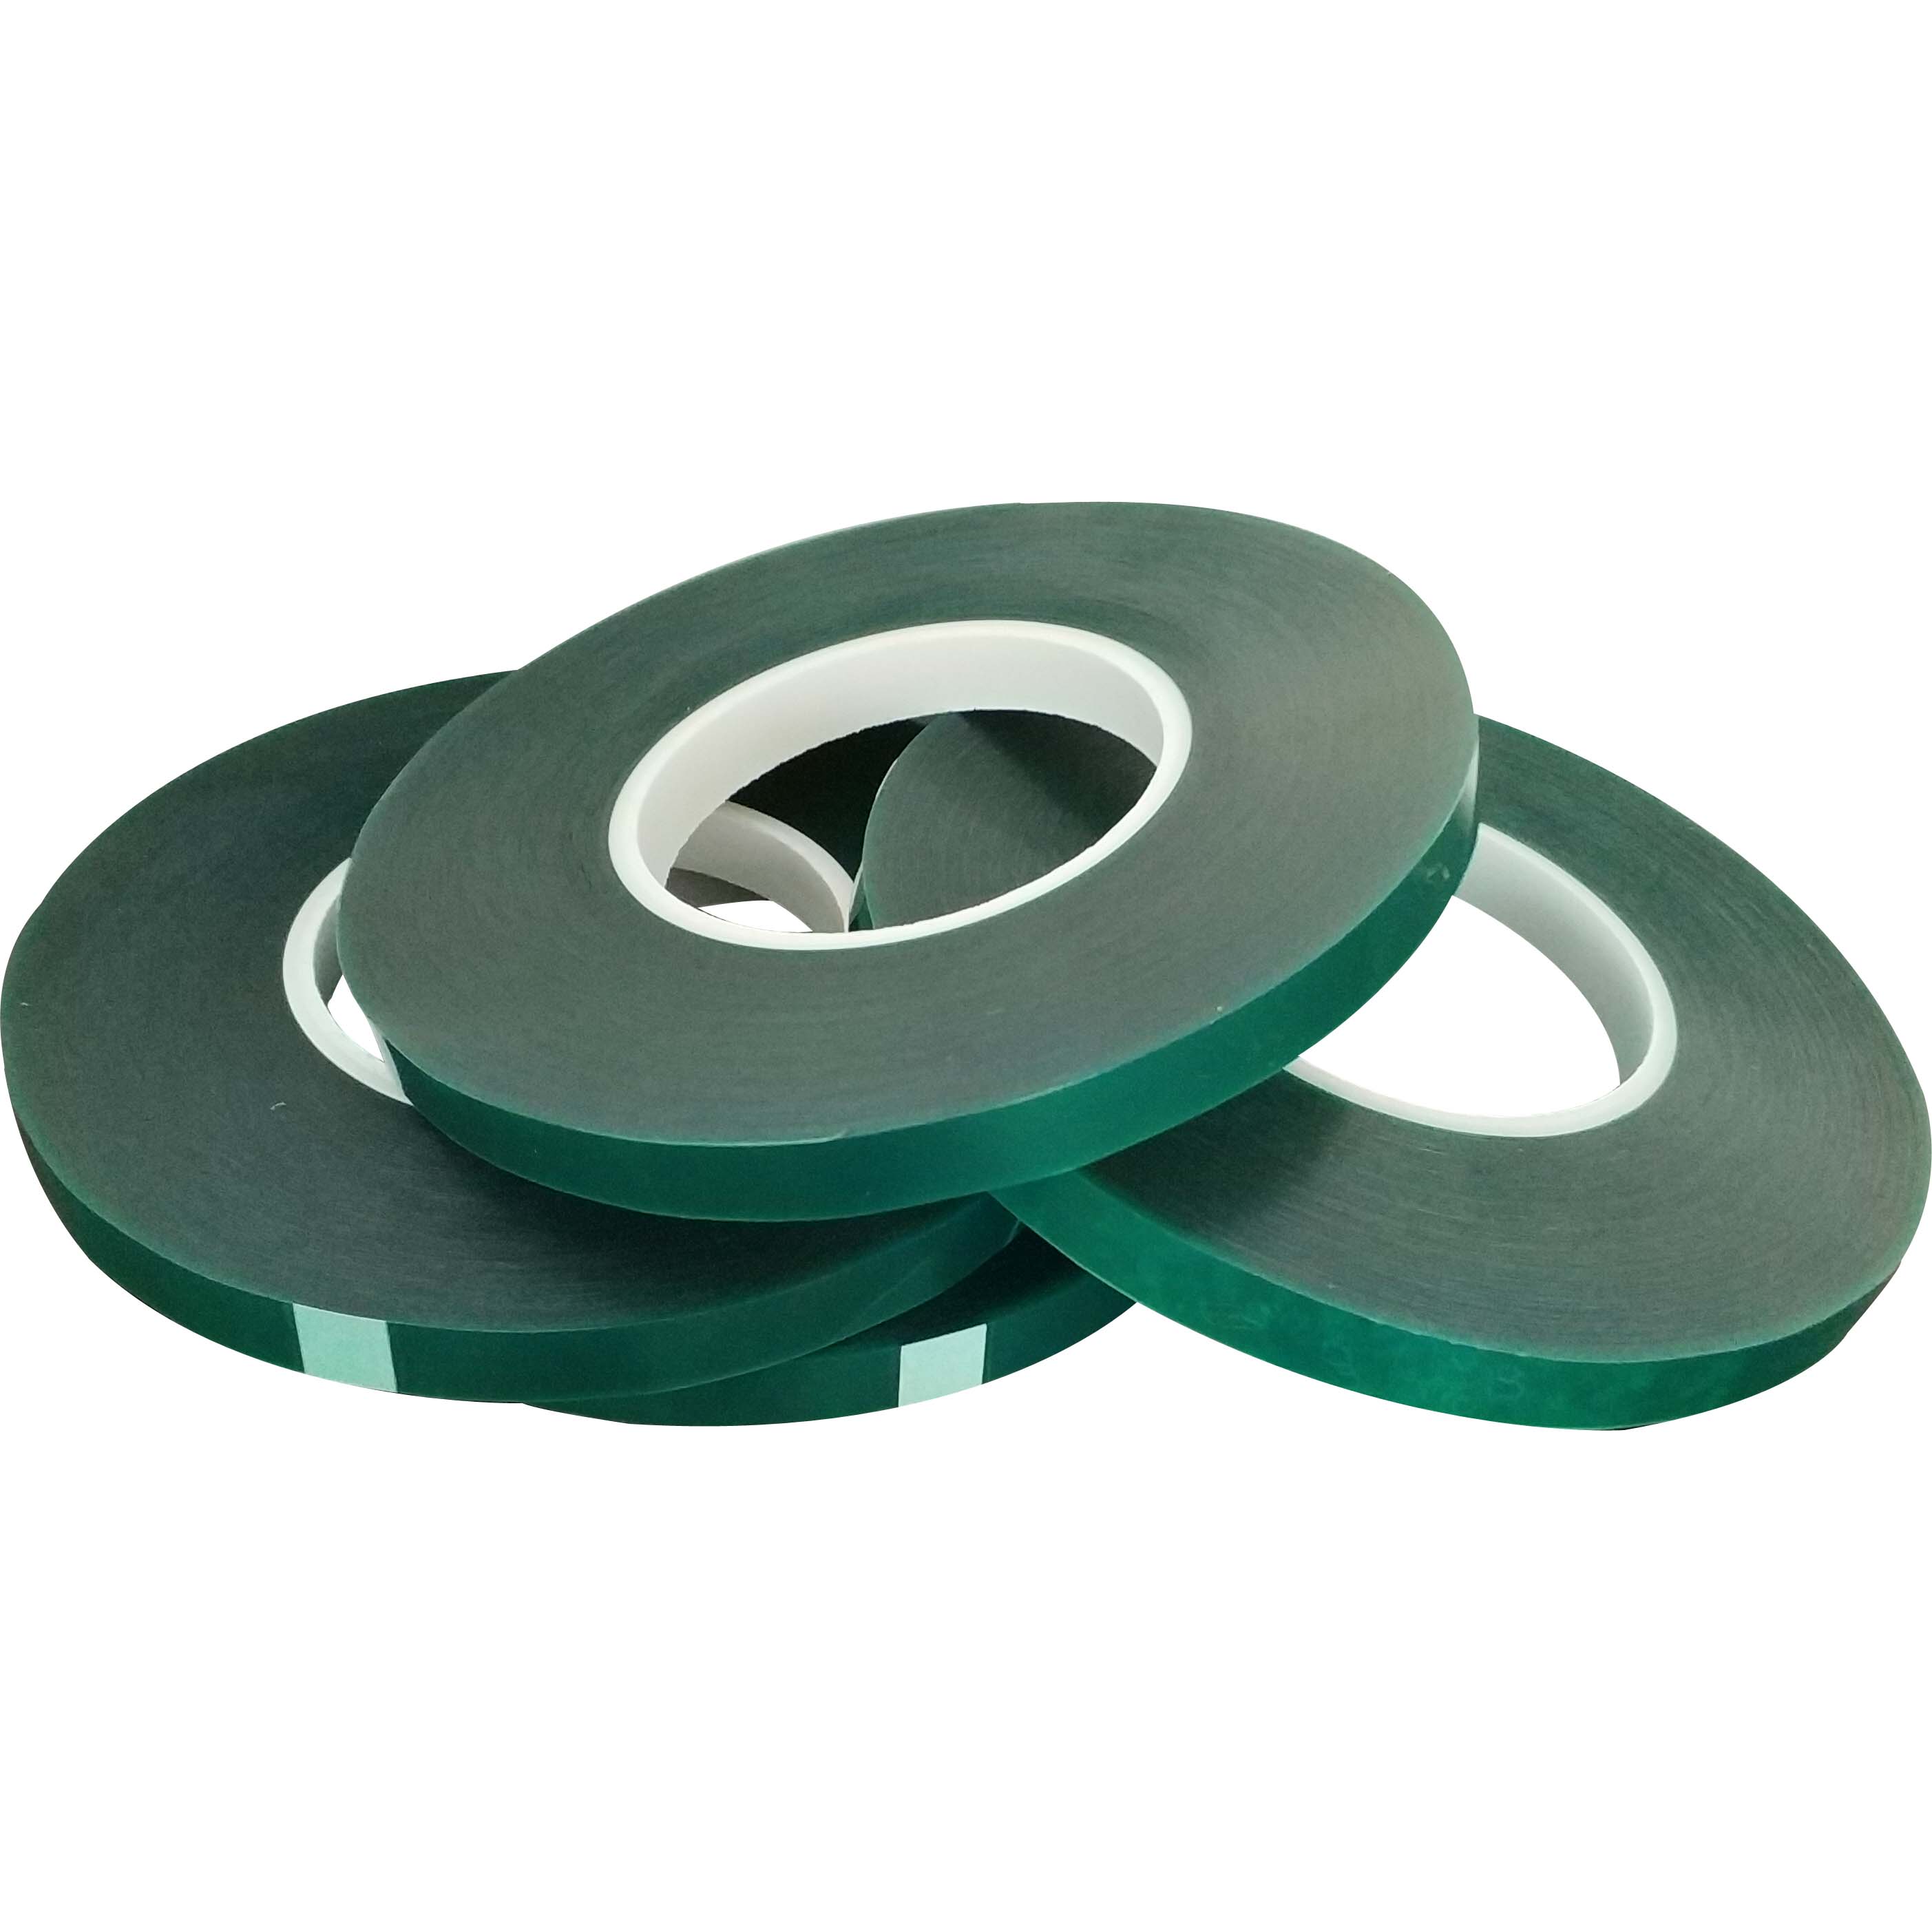 焊接遮蔽胶带,绿色喷涂胶带,喷涂遮蔽胶带